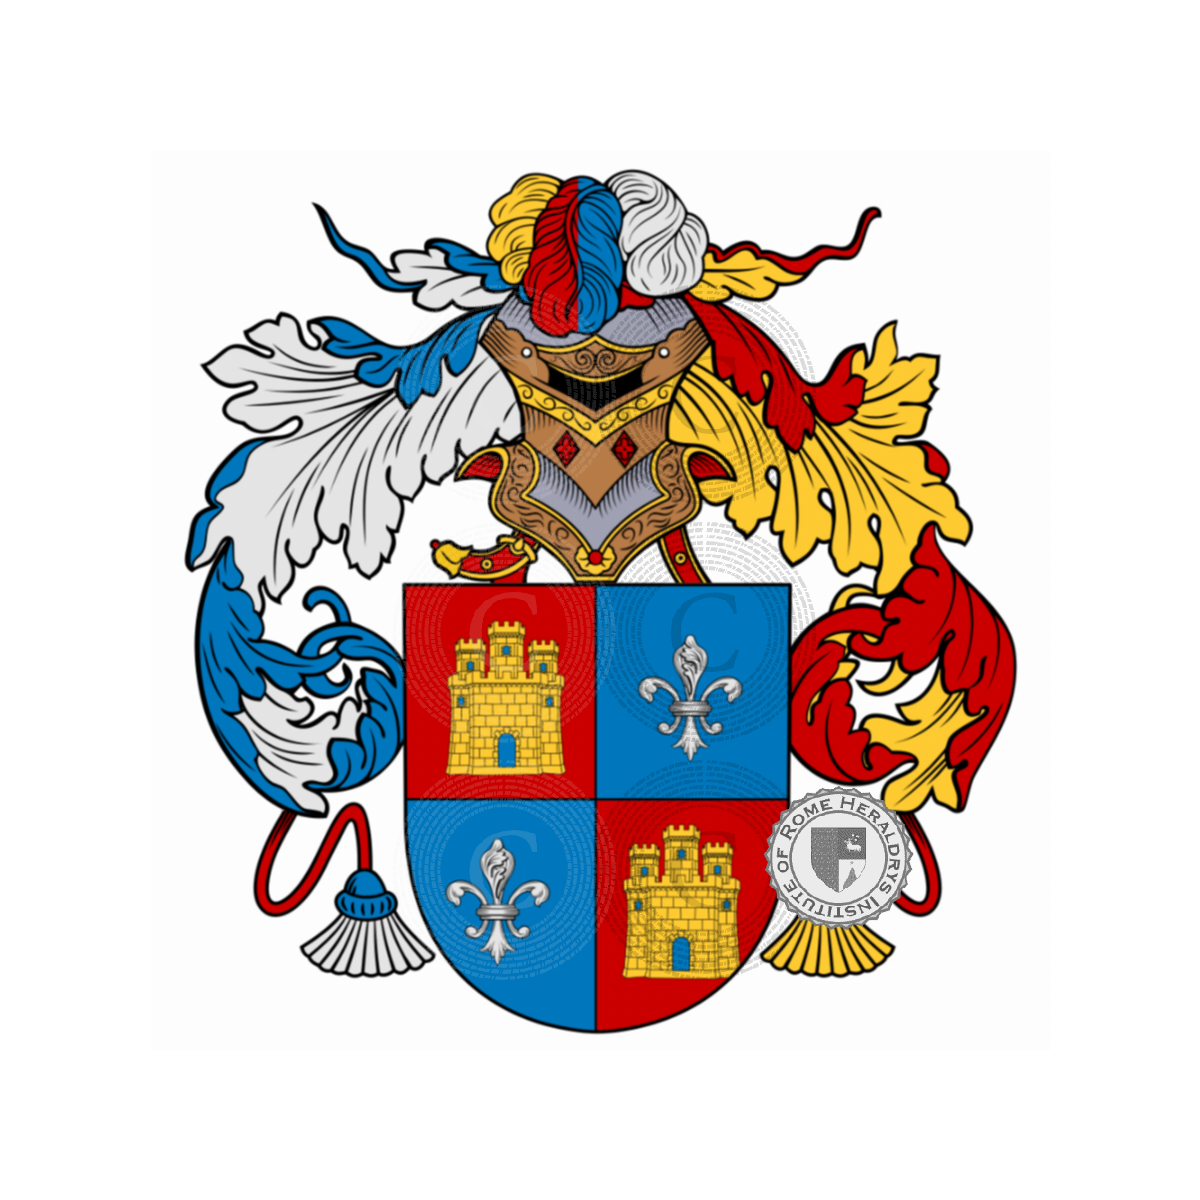 Wappen der FamilieAlonso, Alonzo